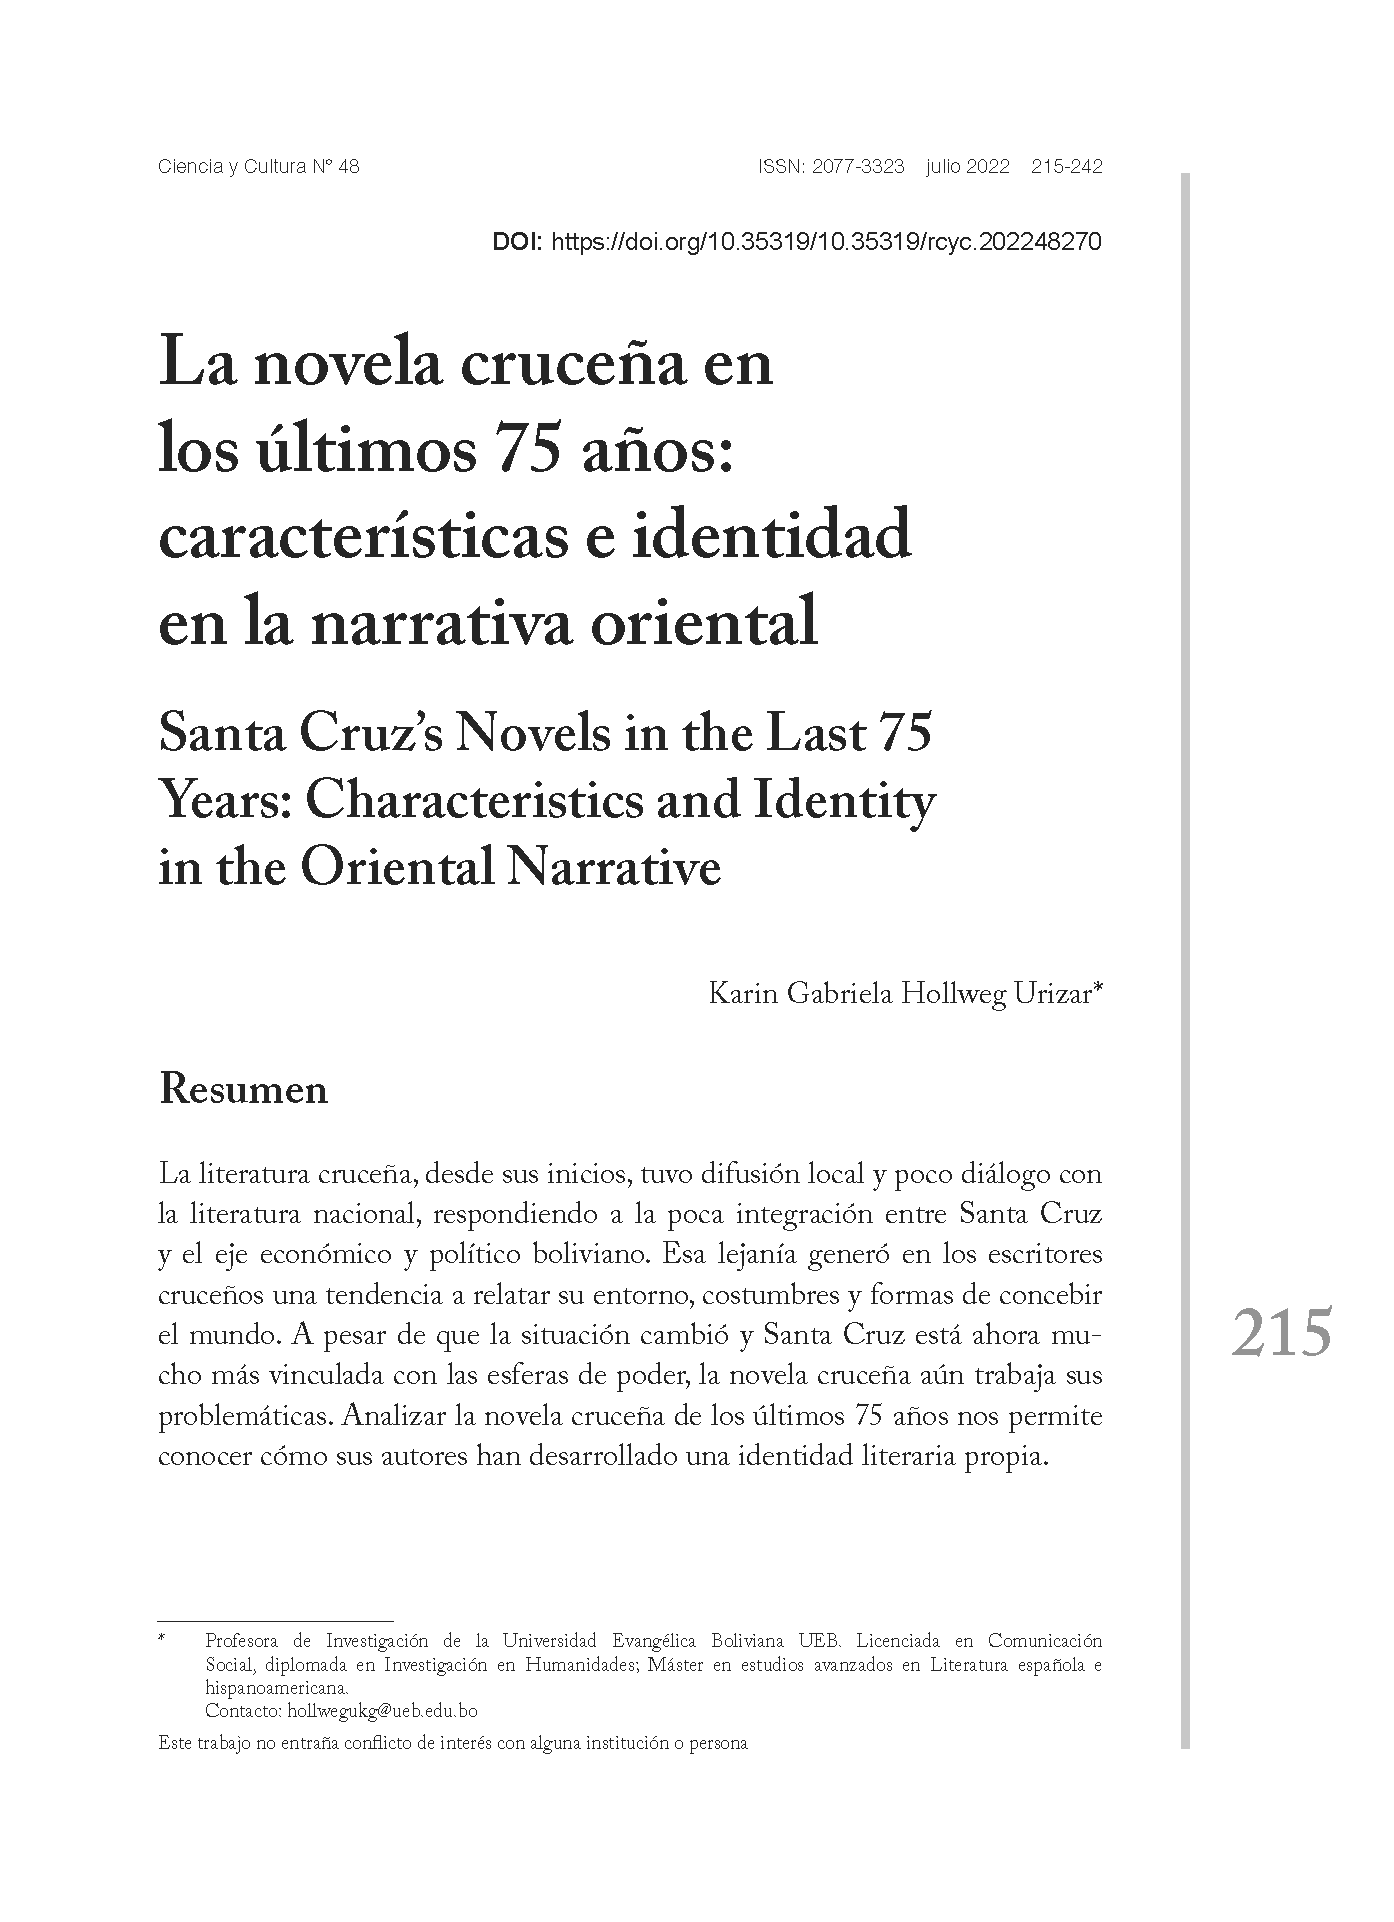 La novela cruceña en los últimos 75 años: características e identidad en la narrativa oriental